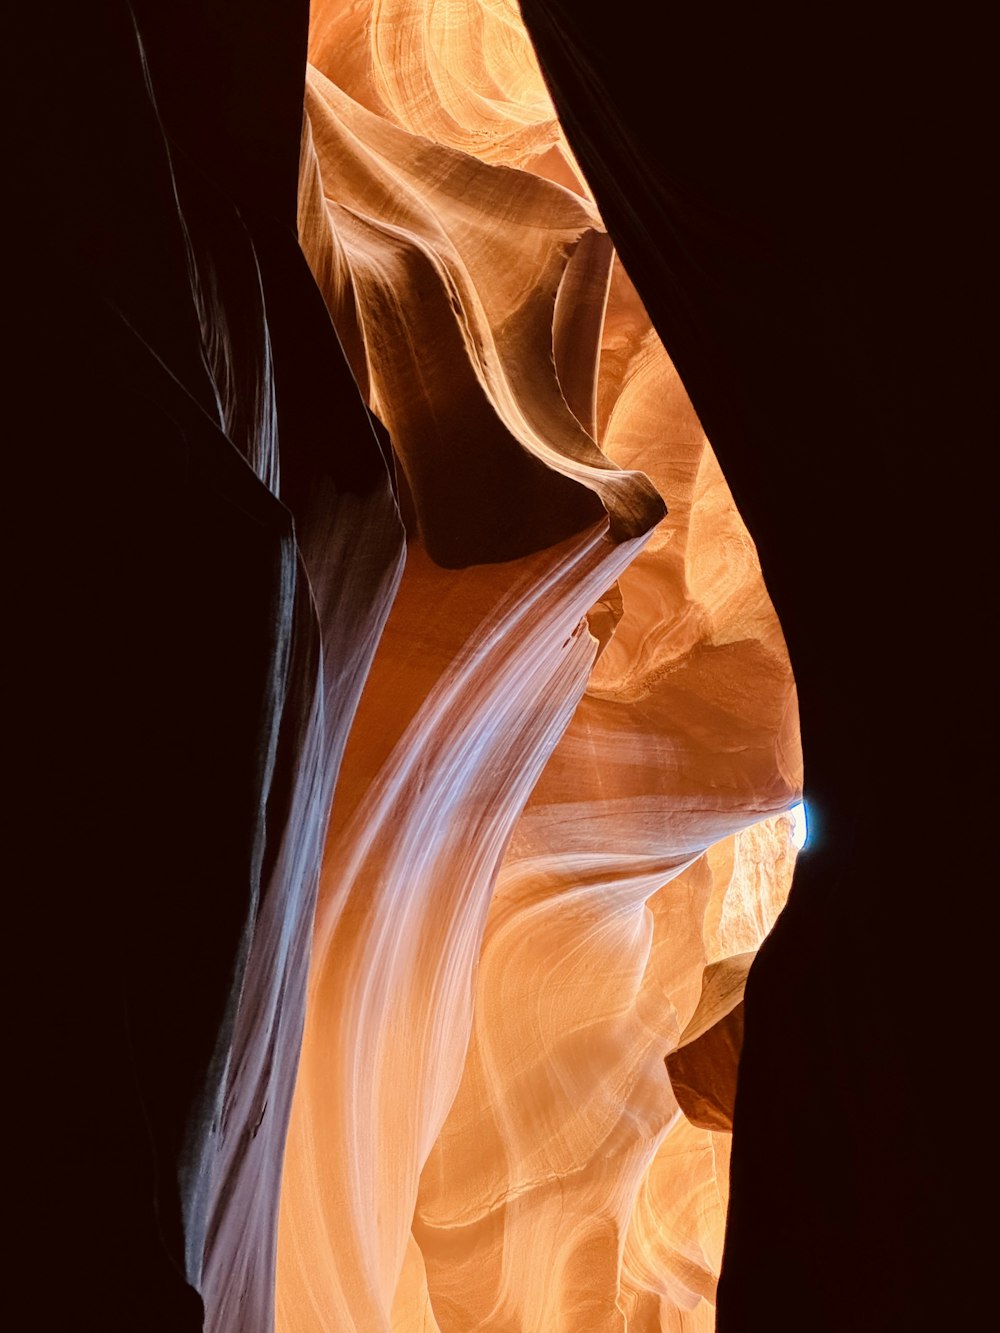 La luz brilla a través de las rocas del cañón